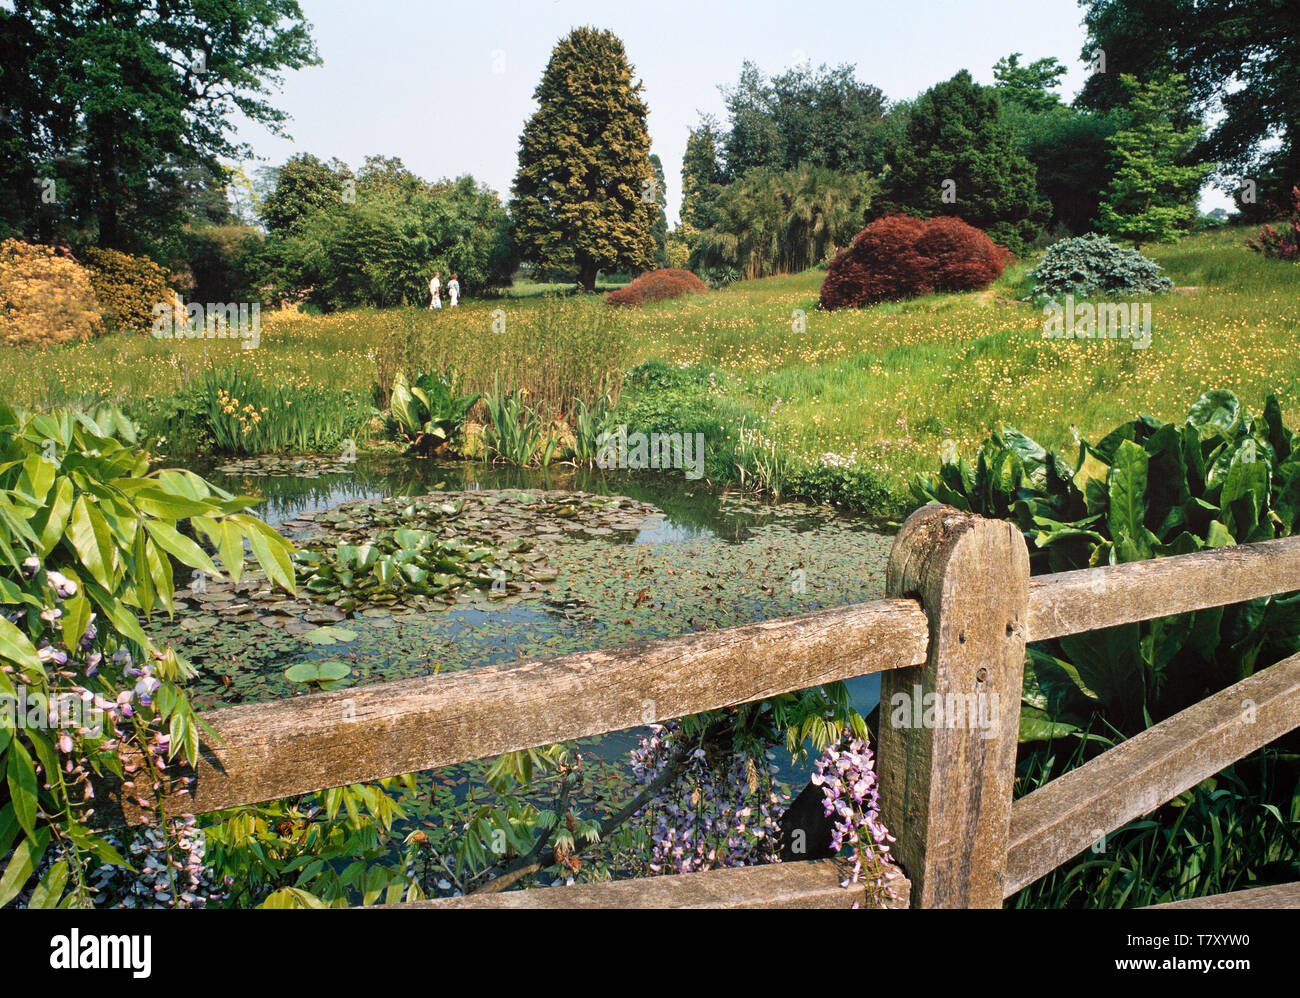 Ruhigen Garten Teich Szene, reife Zaun, diverse Sorten von Sträuchern und Bäumen Stockfoto